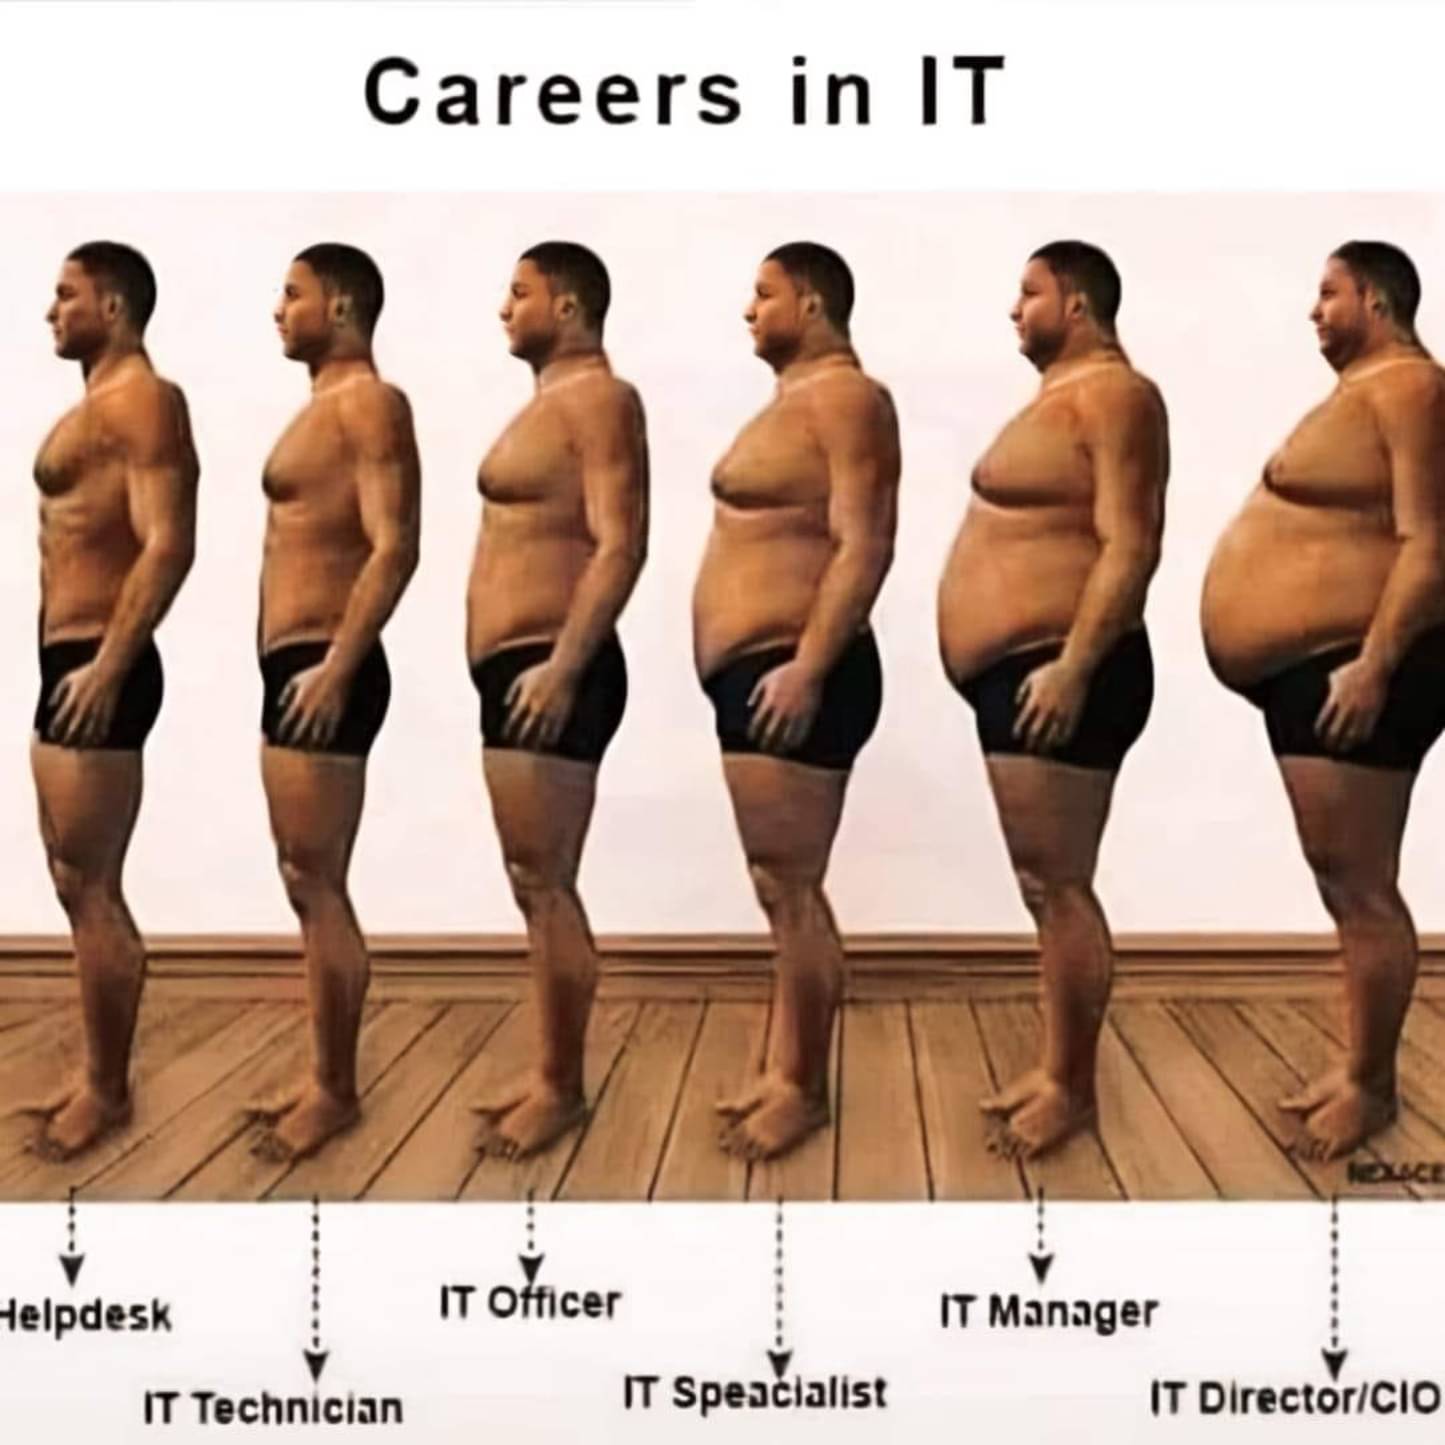 careers_in_IT.jpg